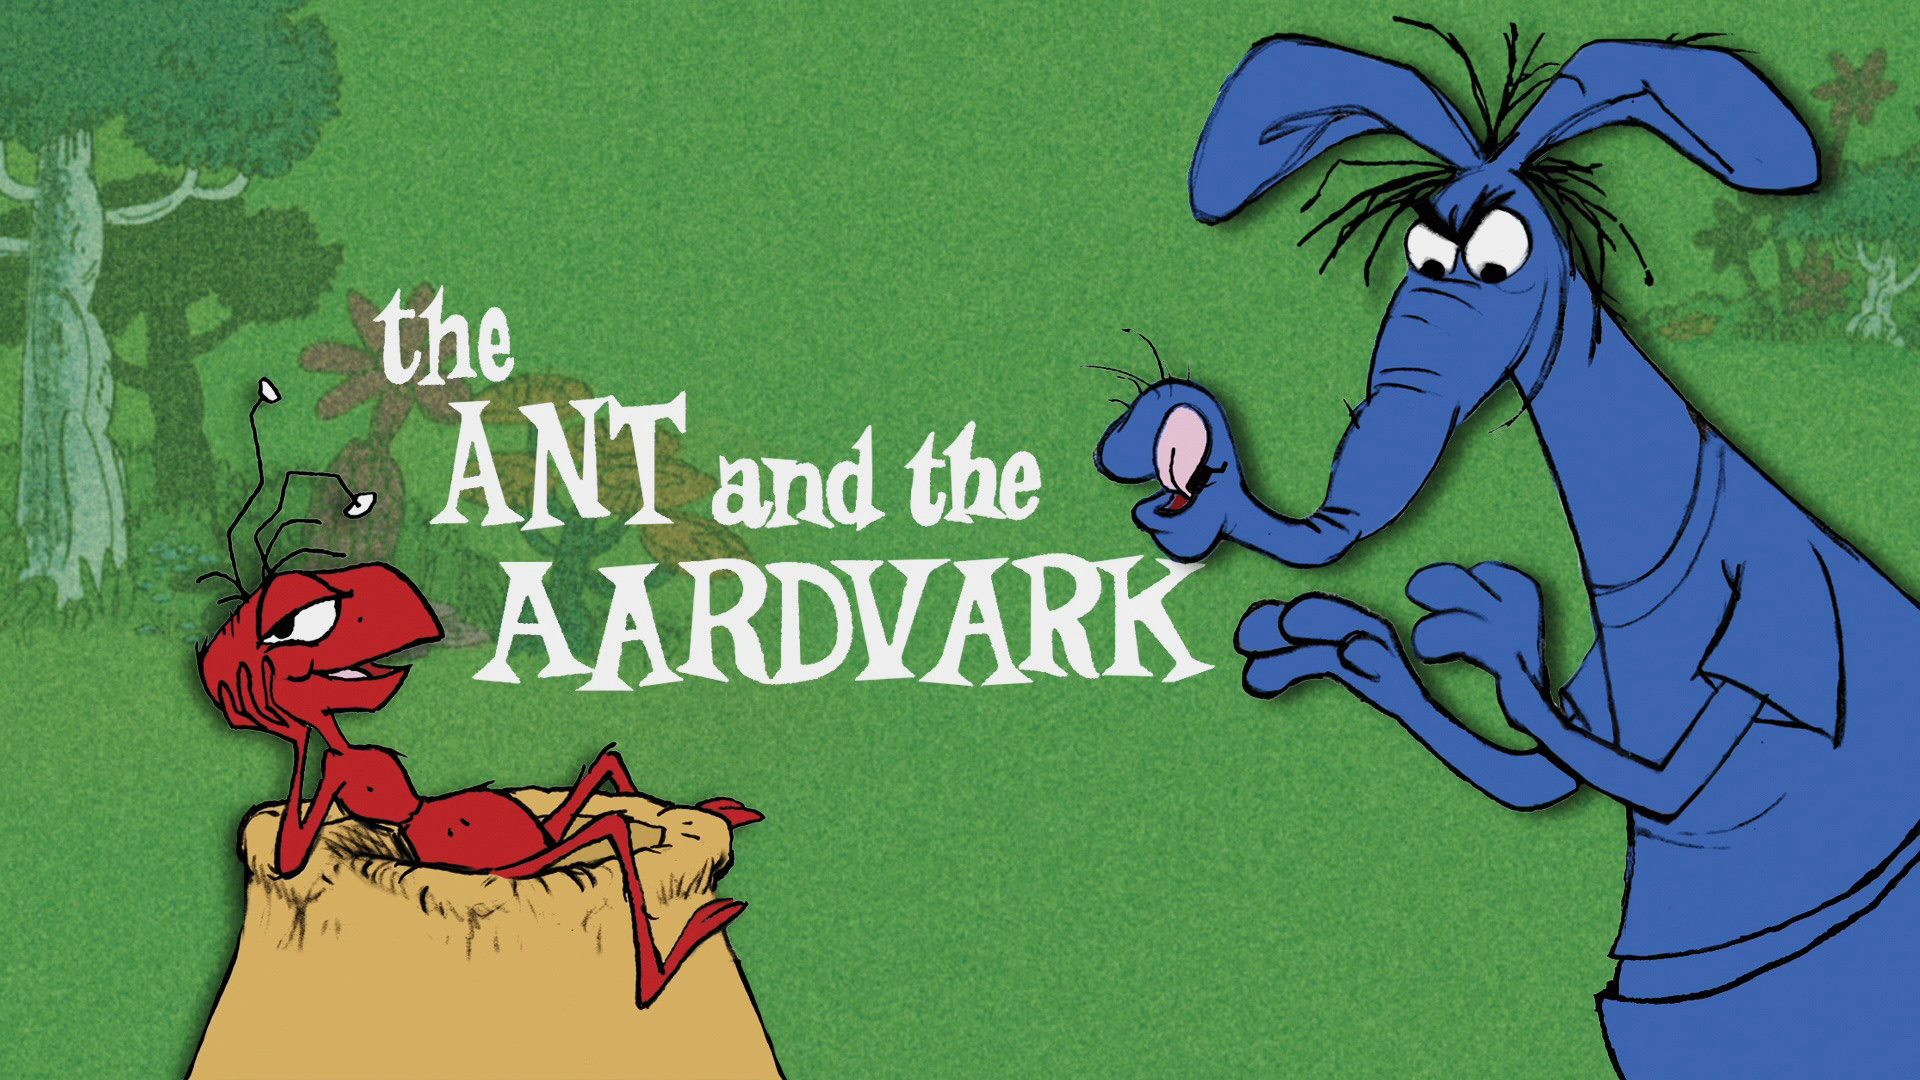 Blue Aardvark (The Ant and the Aardvark) - wide 5